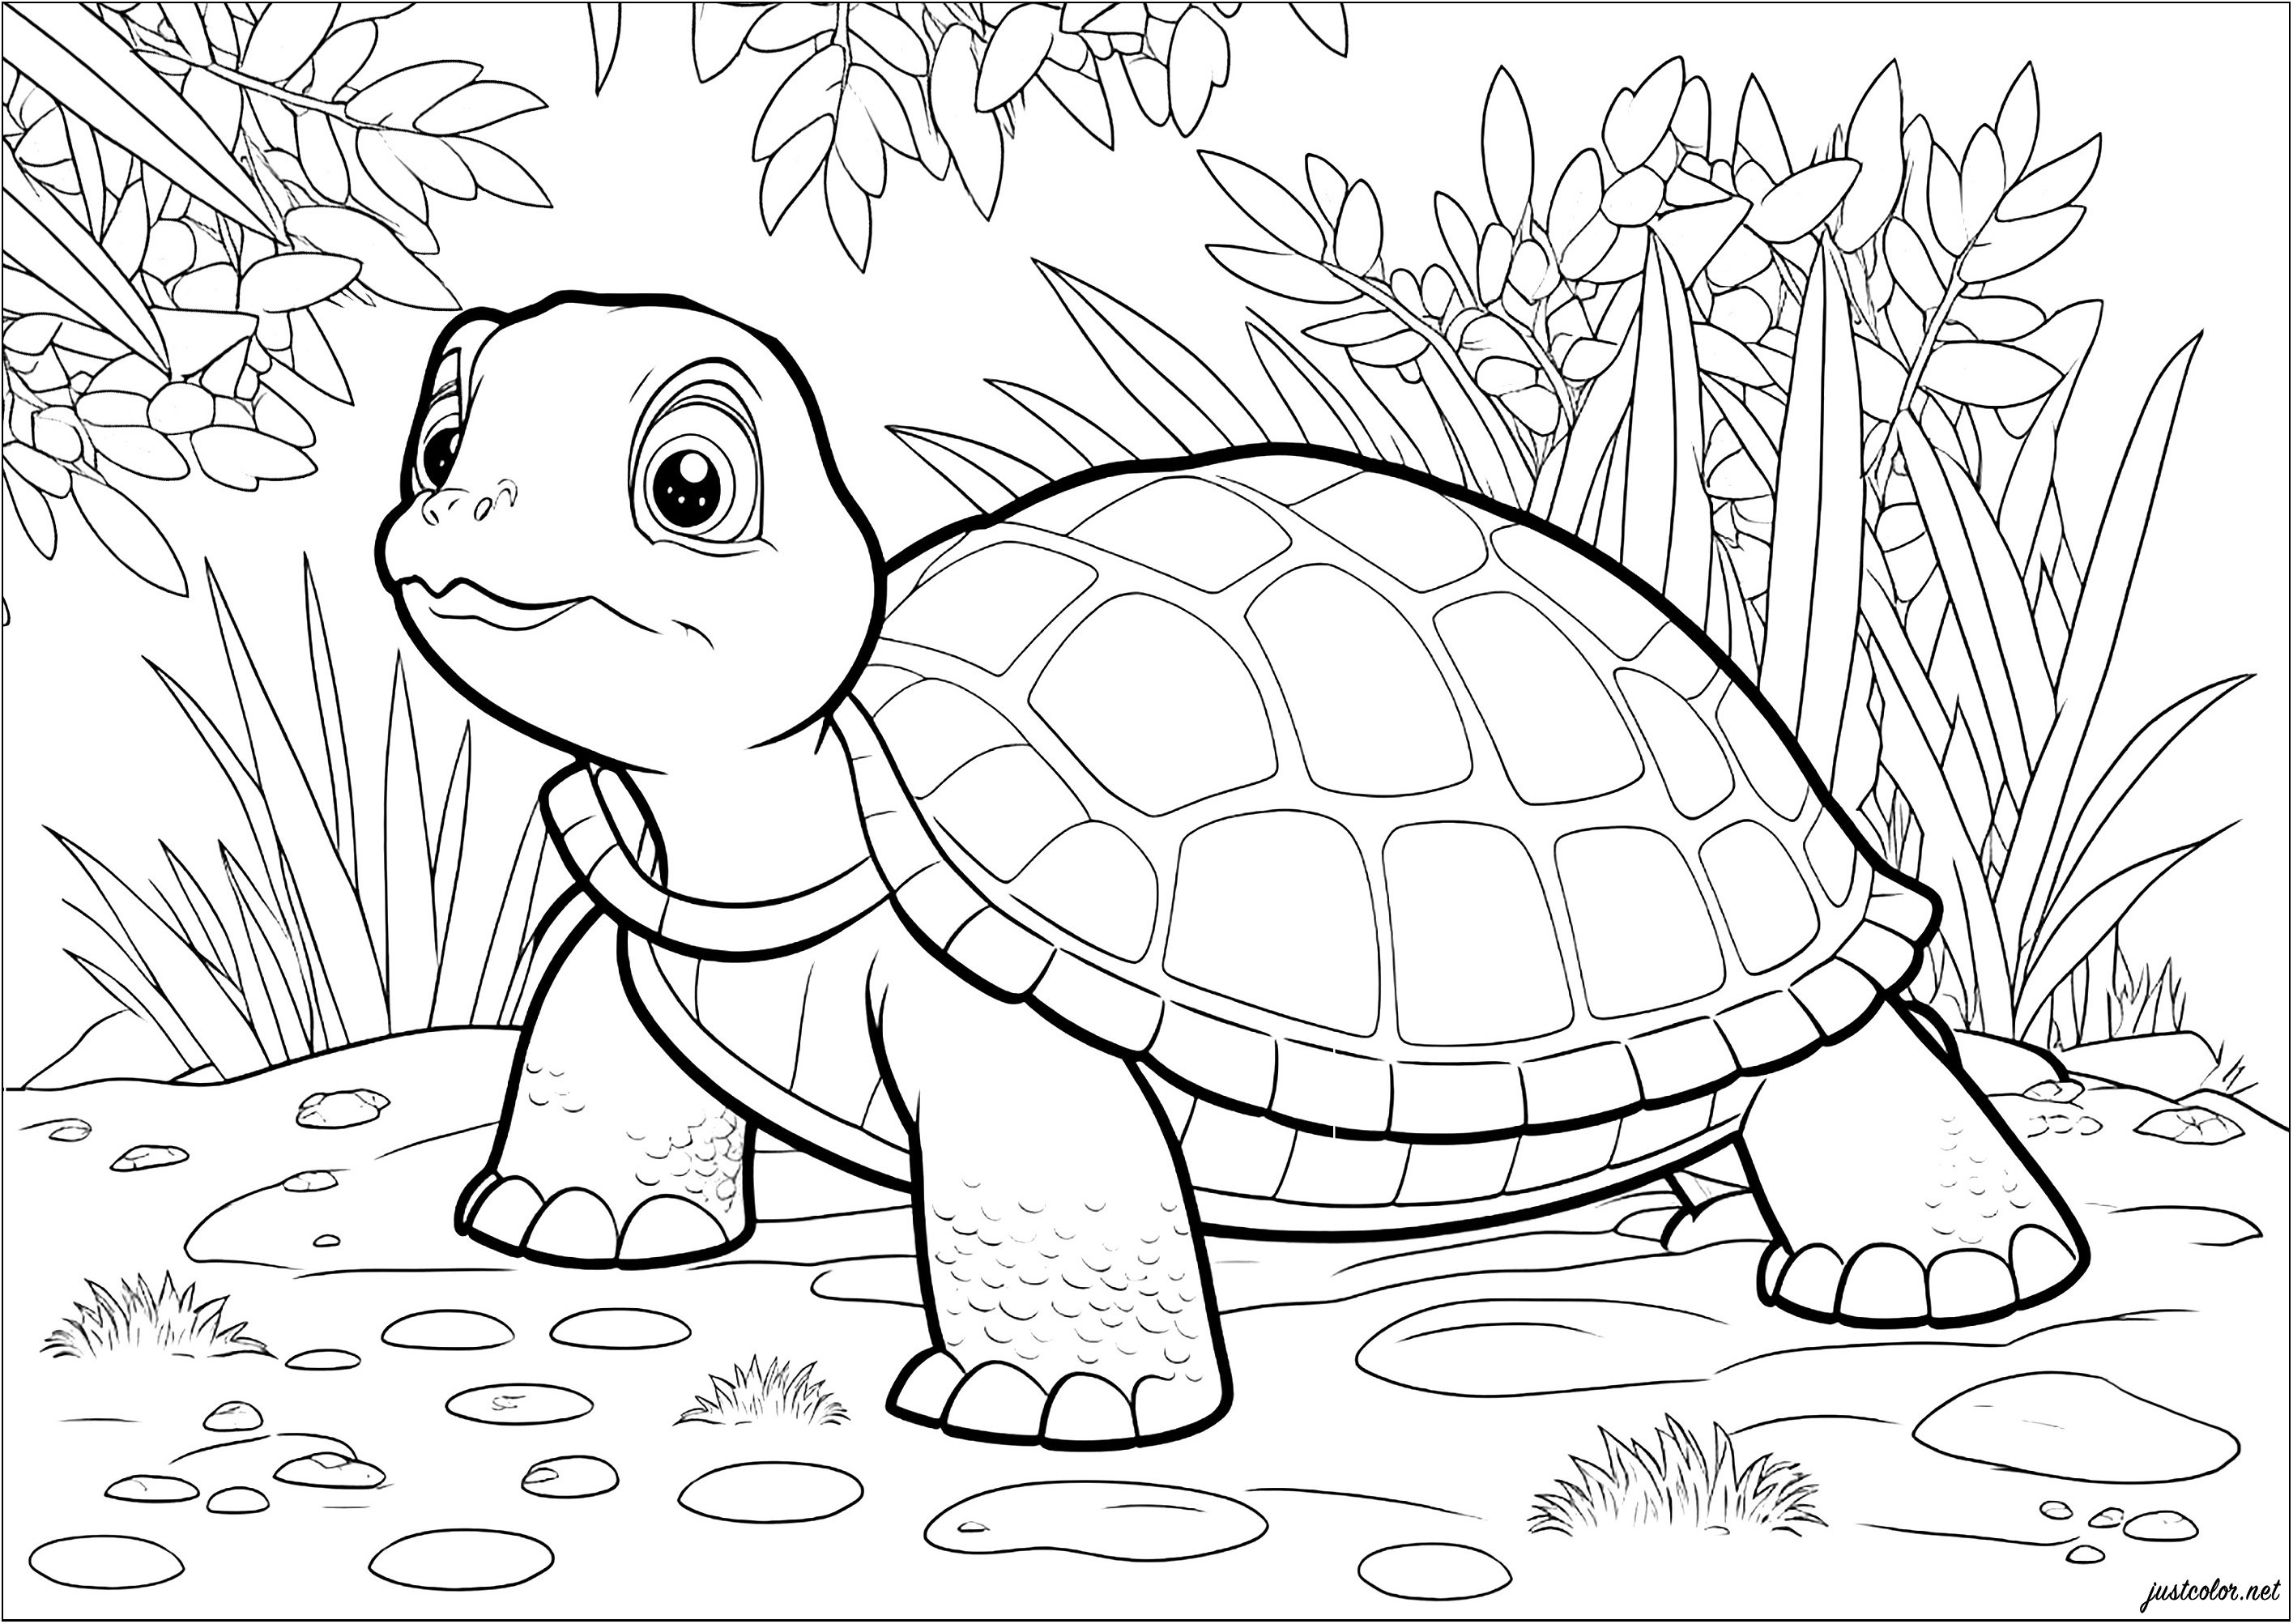 Bonita coloração de uma tartaruga no seu ambiente natural. Observe a determinação da tartaruga à medida que avança lentamente em direção ao seu objetivo.